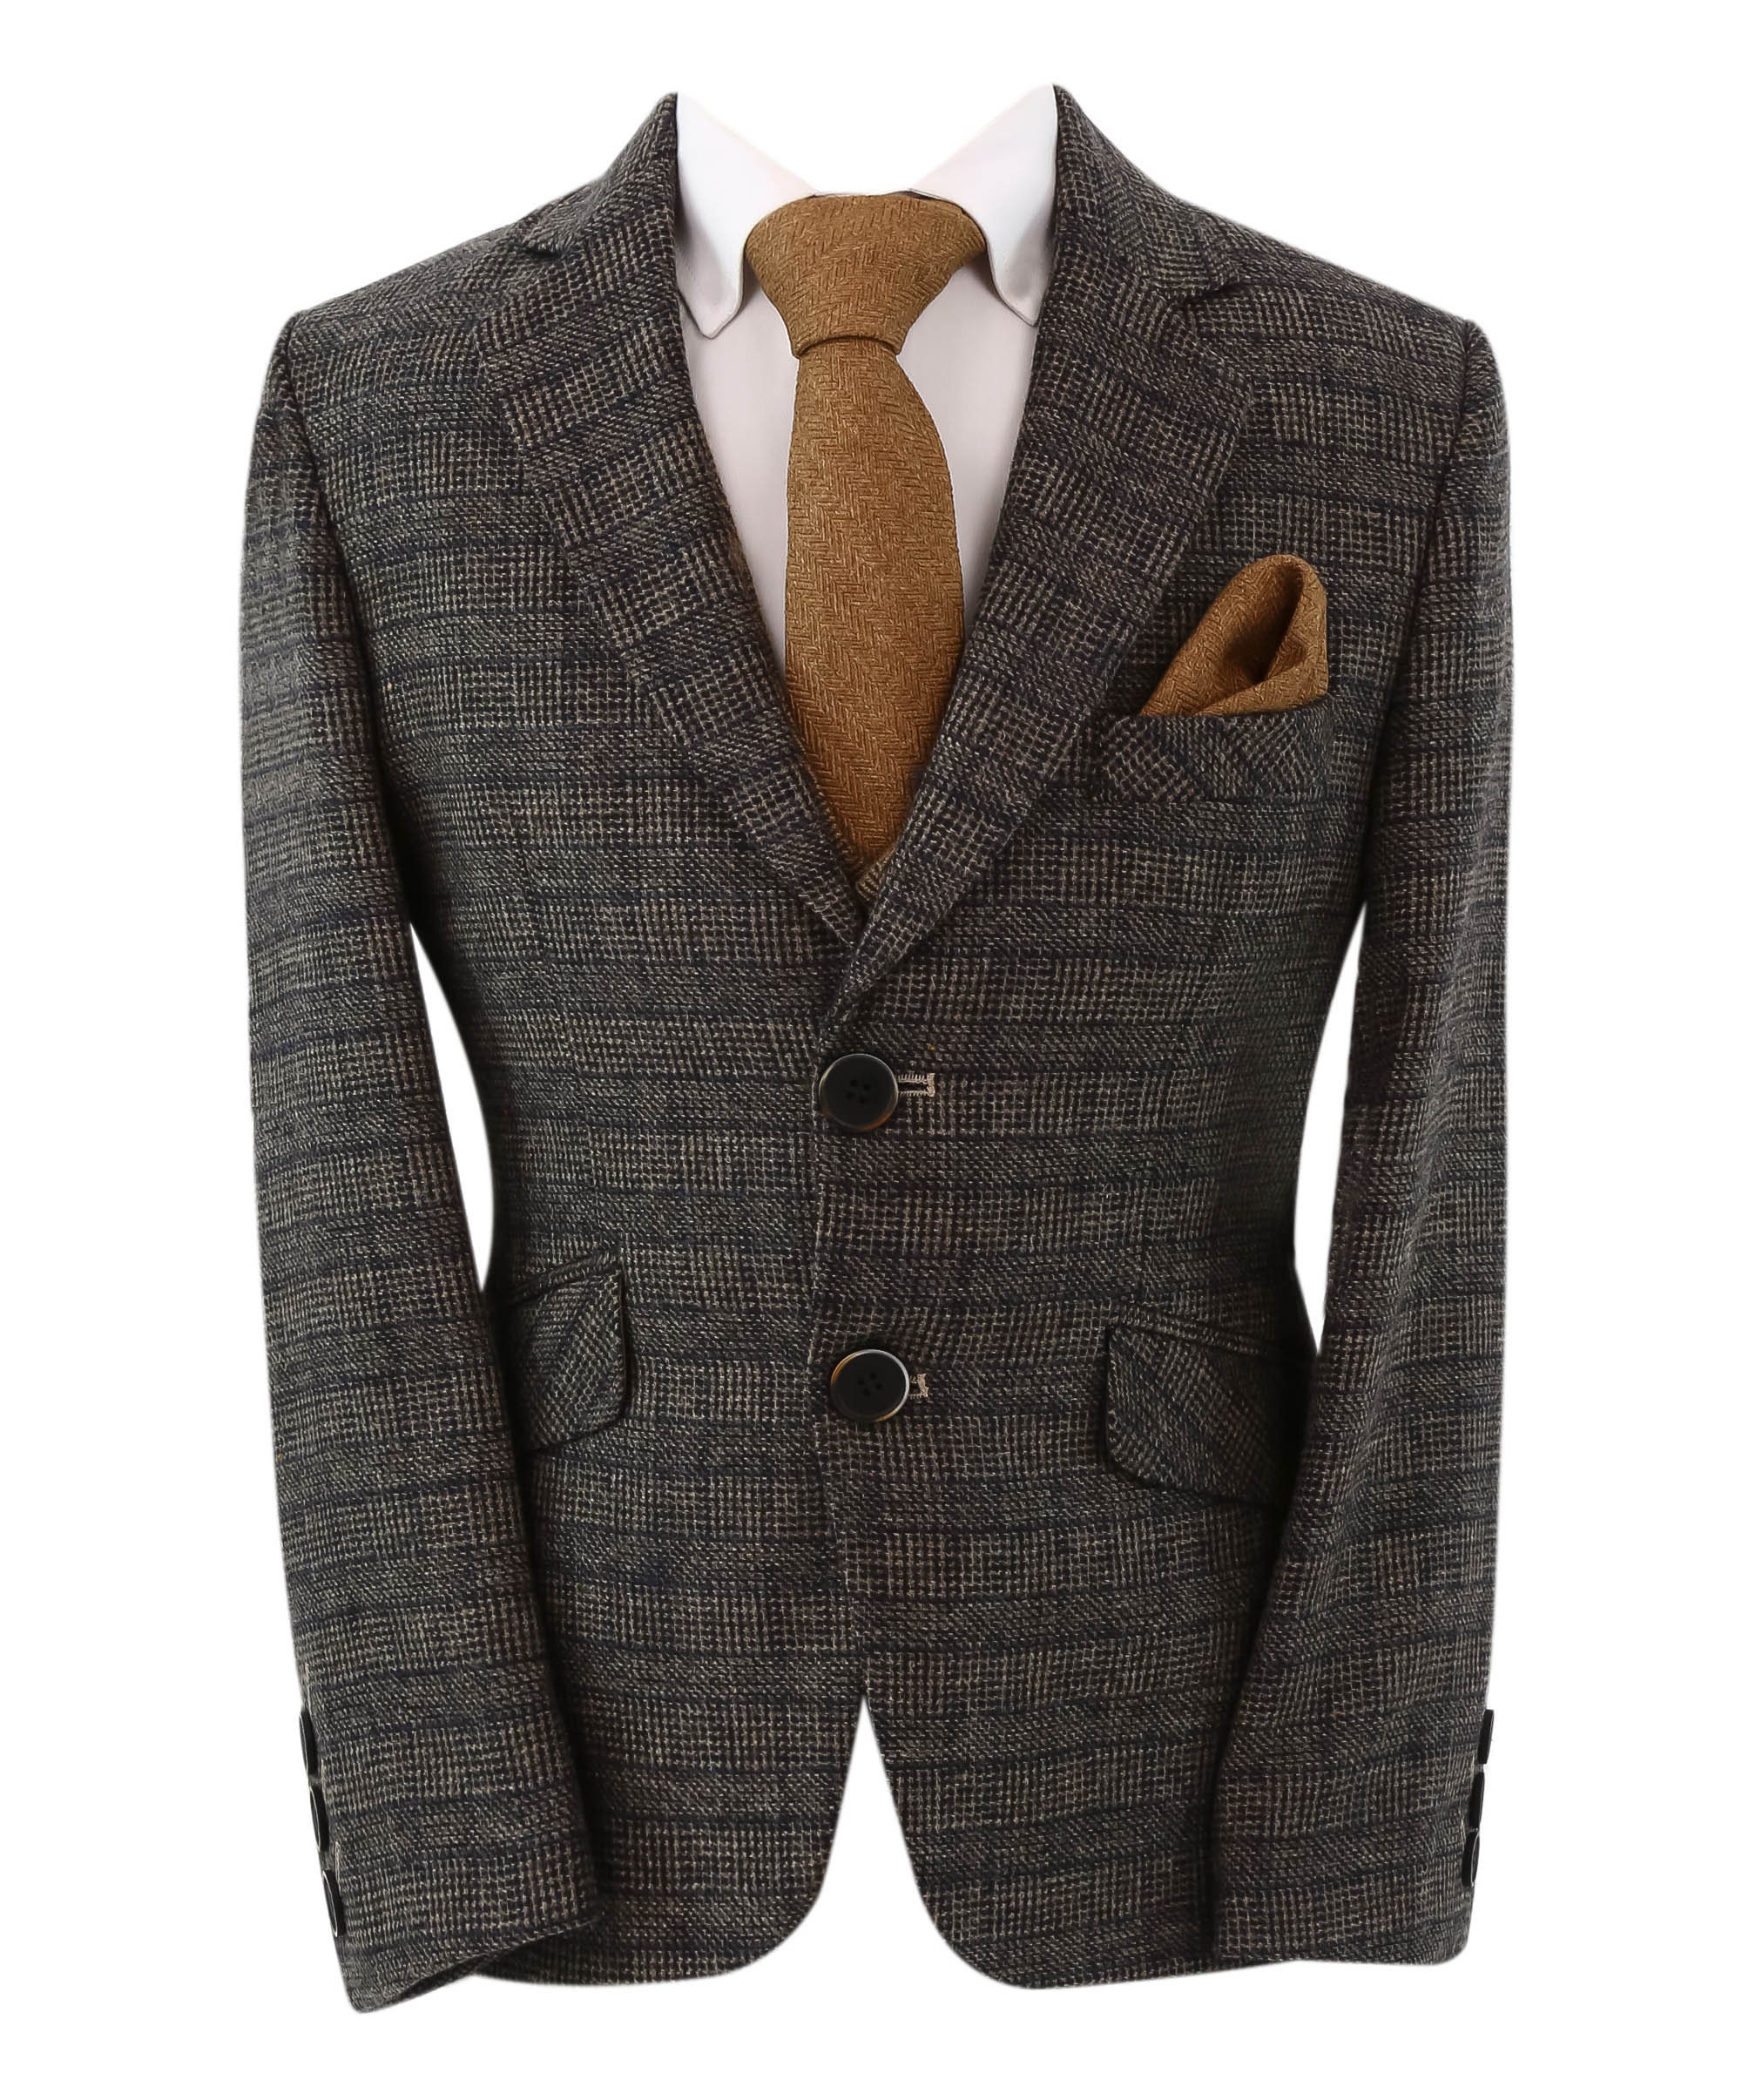 Boys Check Tweed Slim Fit 3 Piece Suit in Dark Brown | Etsy